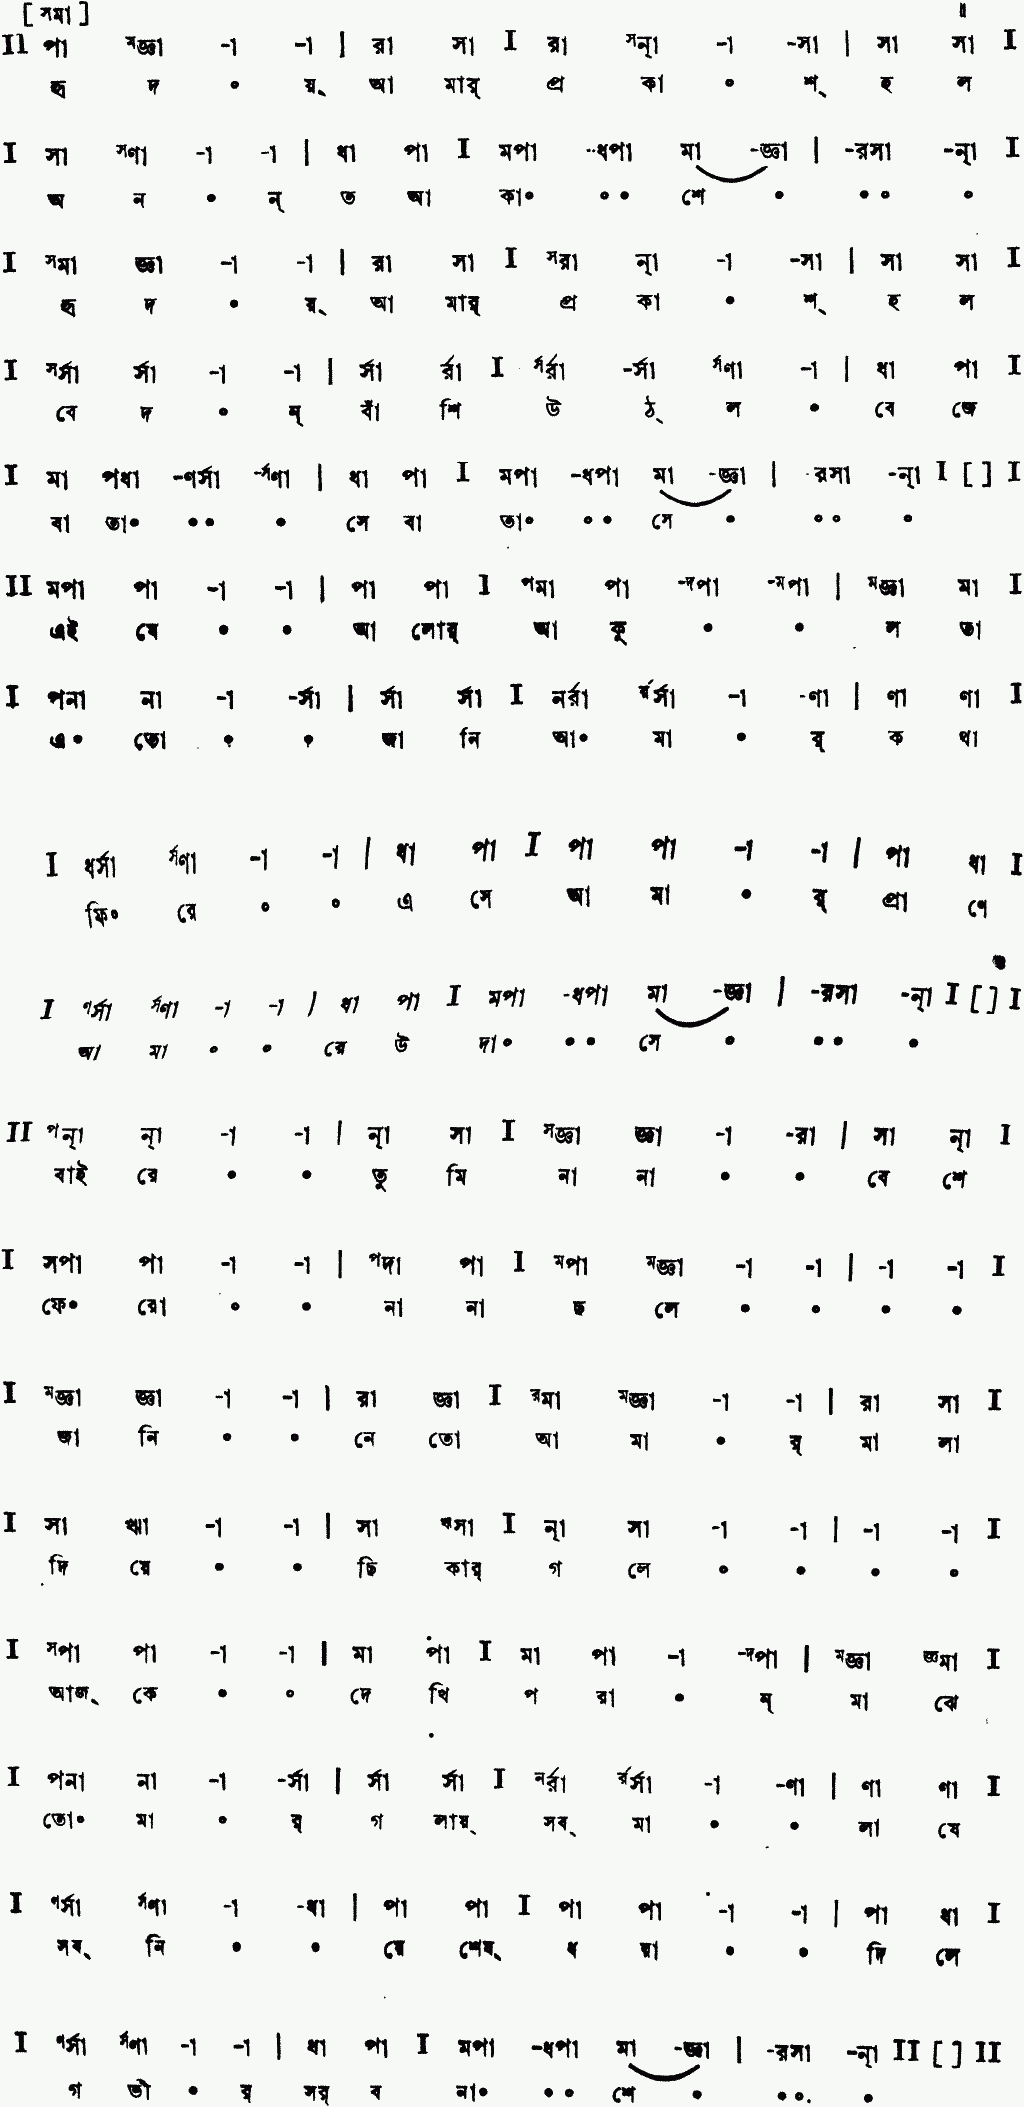 Notation hridoy amar prokash holo